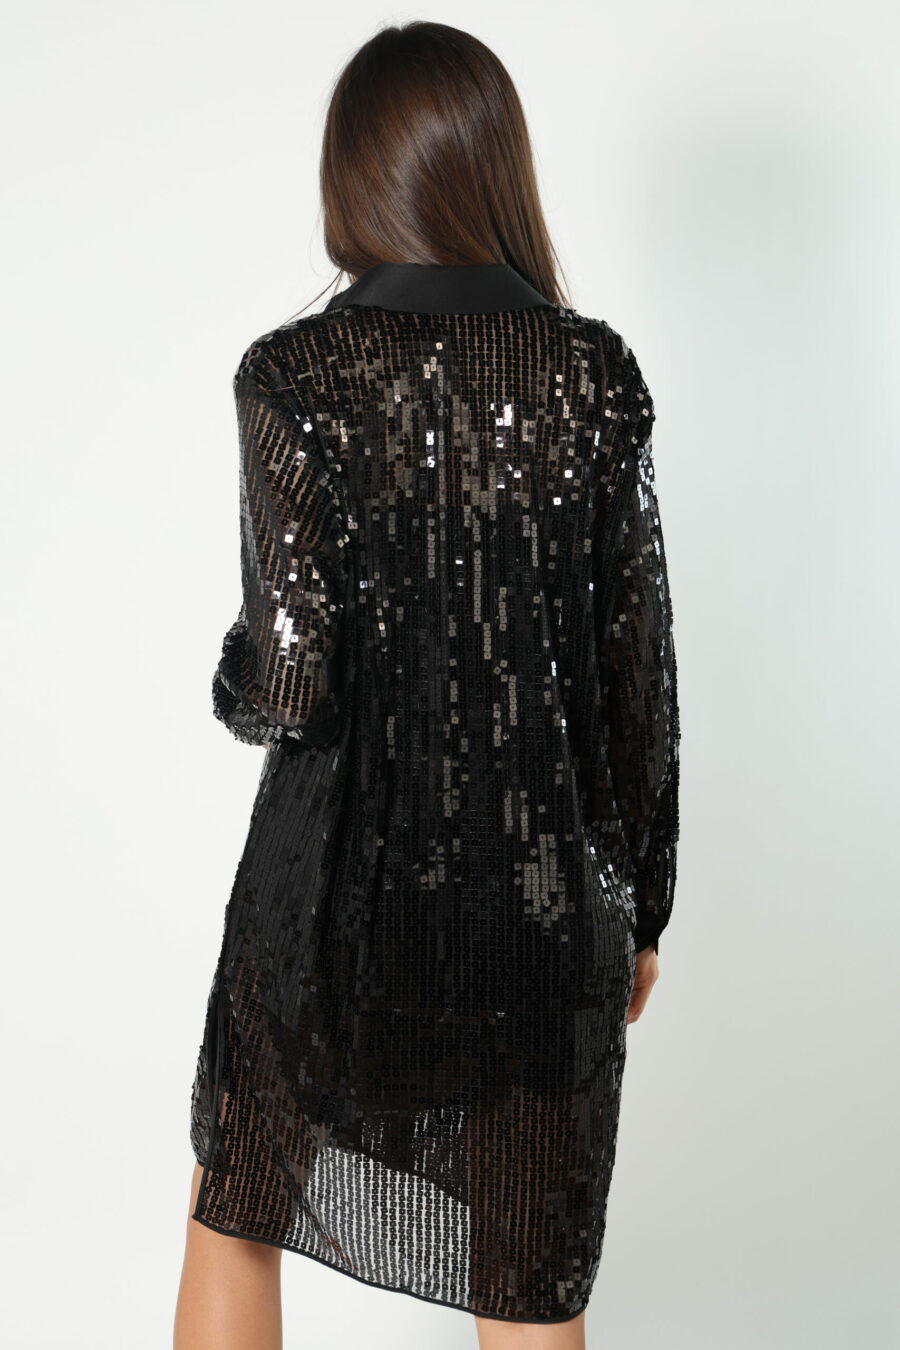 Schwarzes Tunika-Kleid mit Pailletten - 8052865435499 545 skaliert